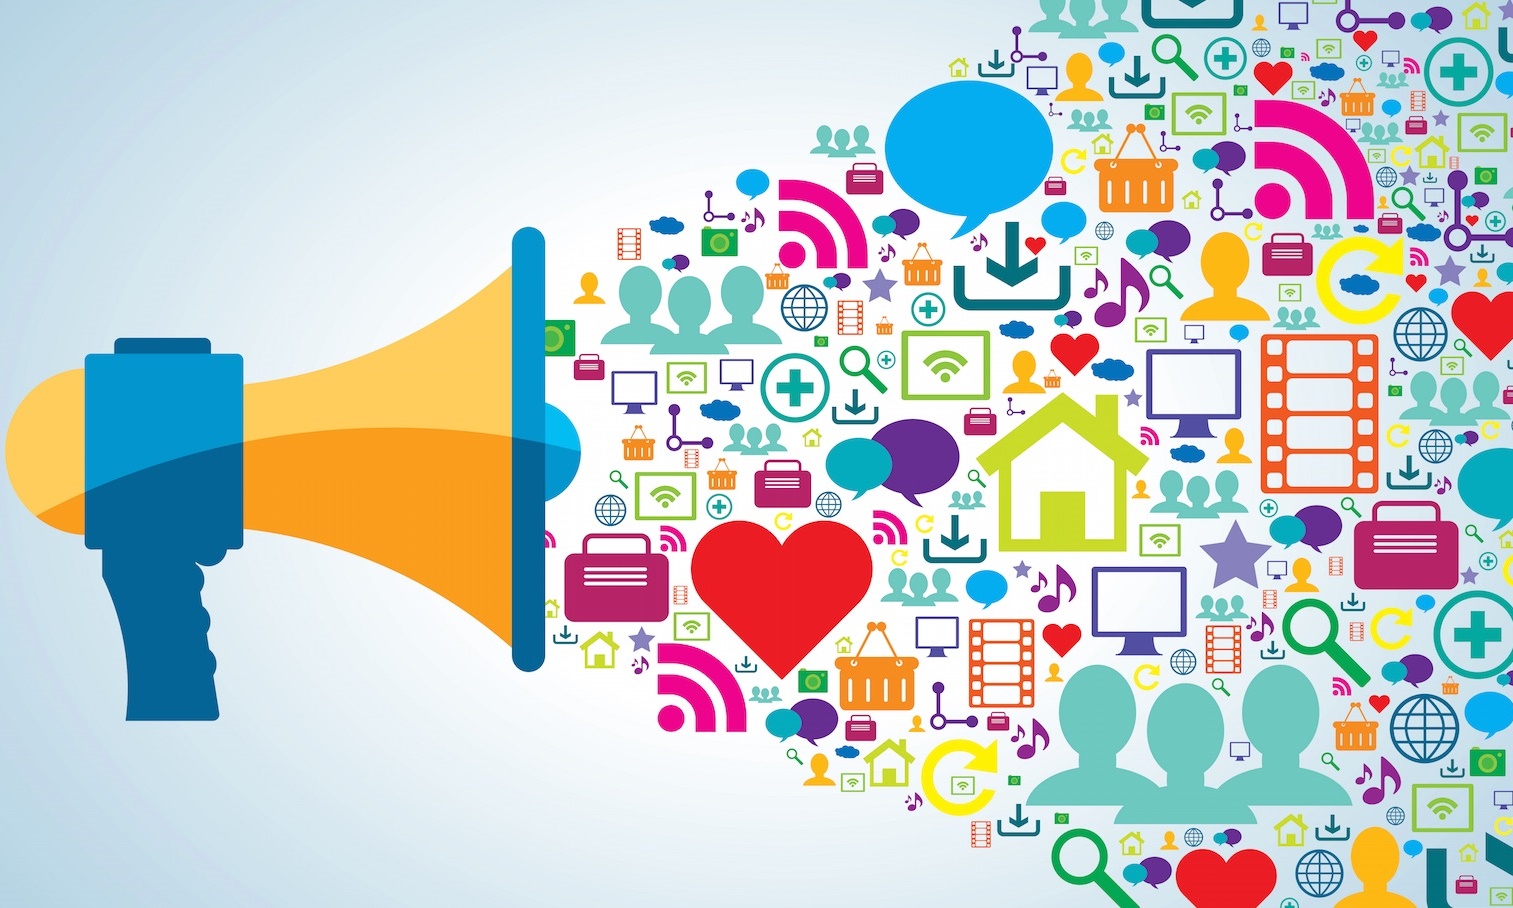 Jaki portal społecznościowy najbardziej angażuje internautów? LinkedIn socialmedia crop